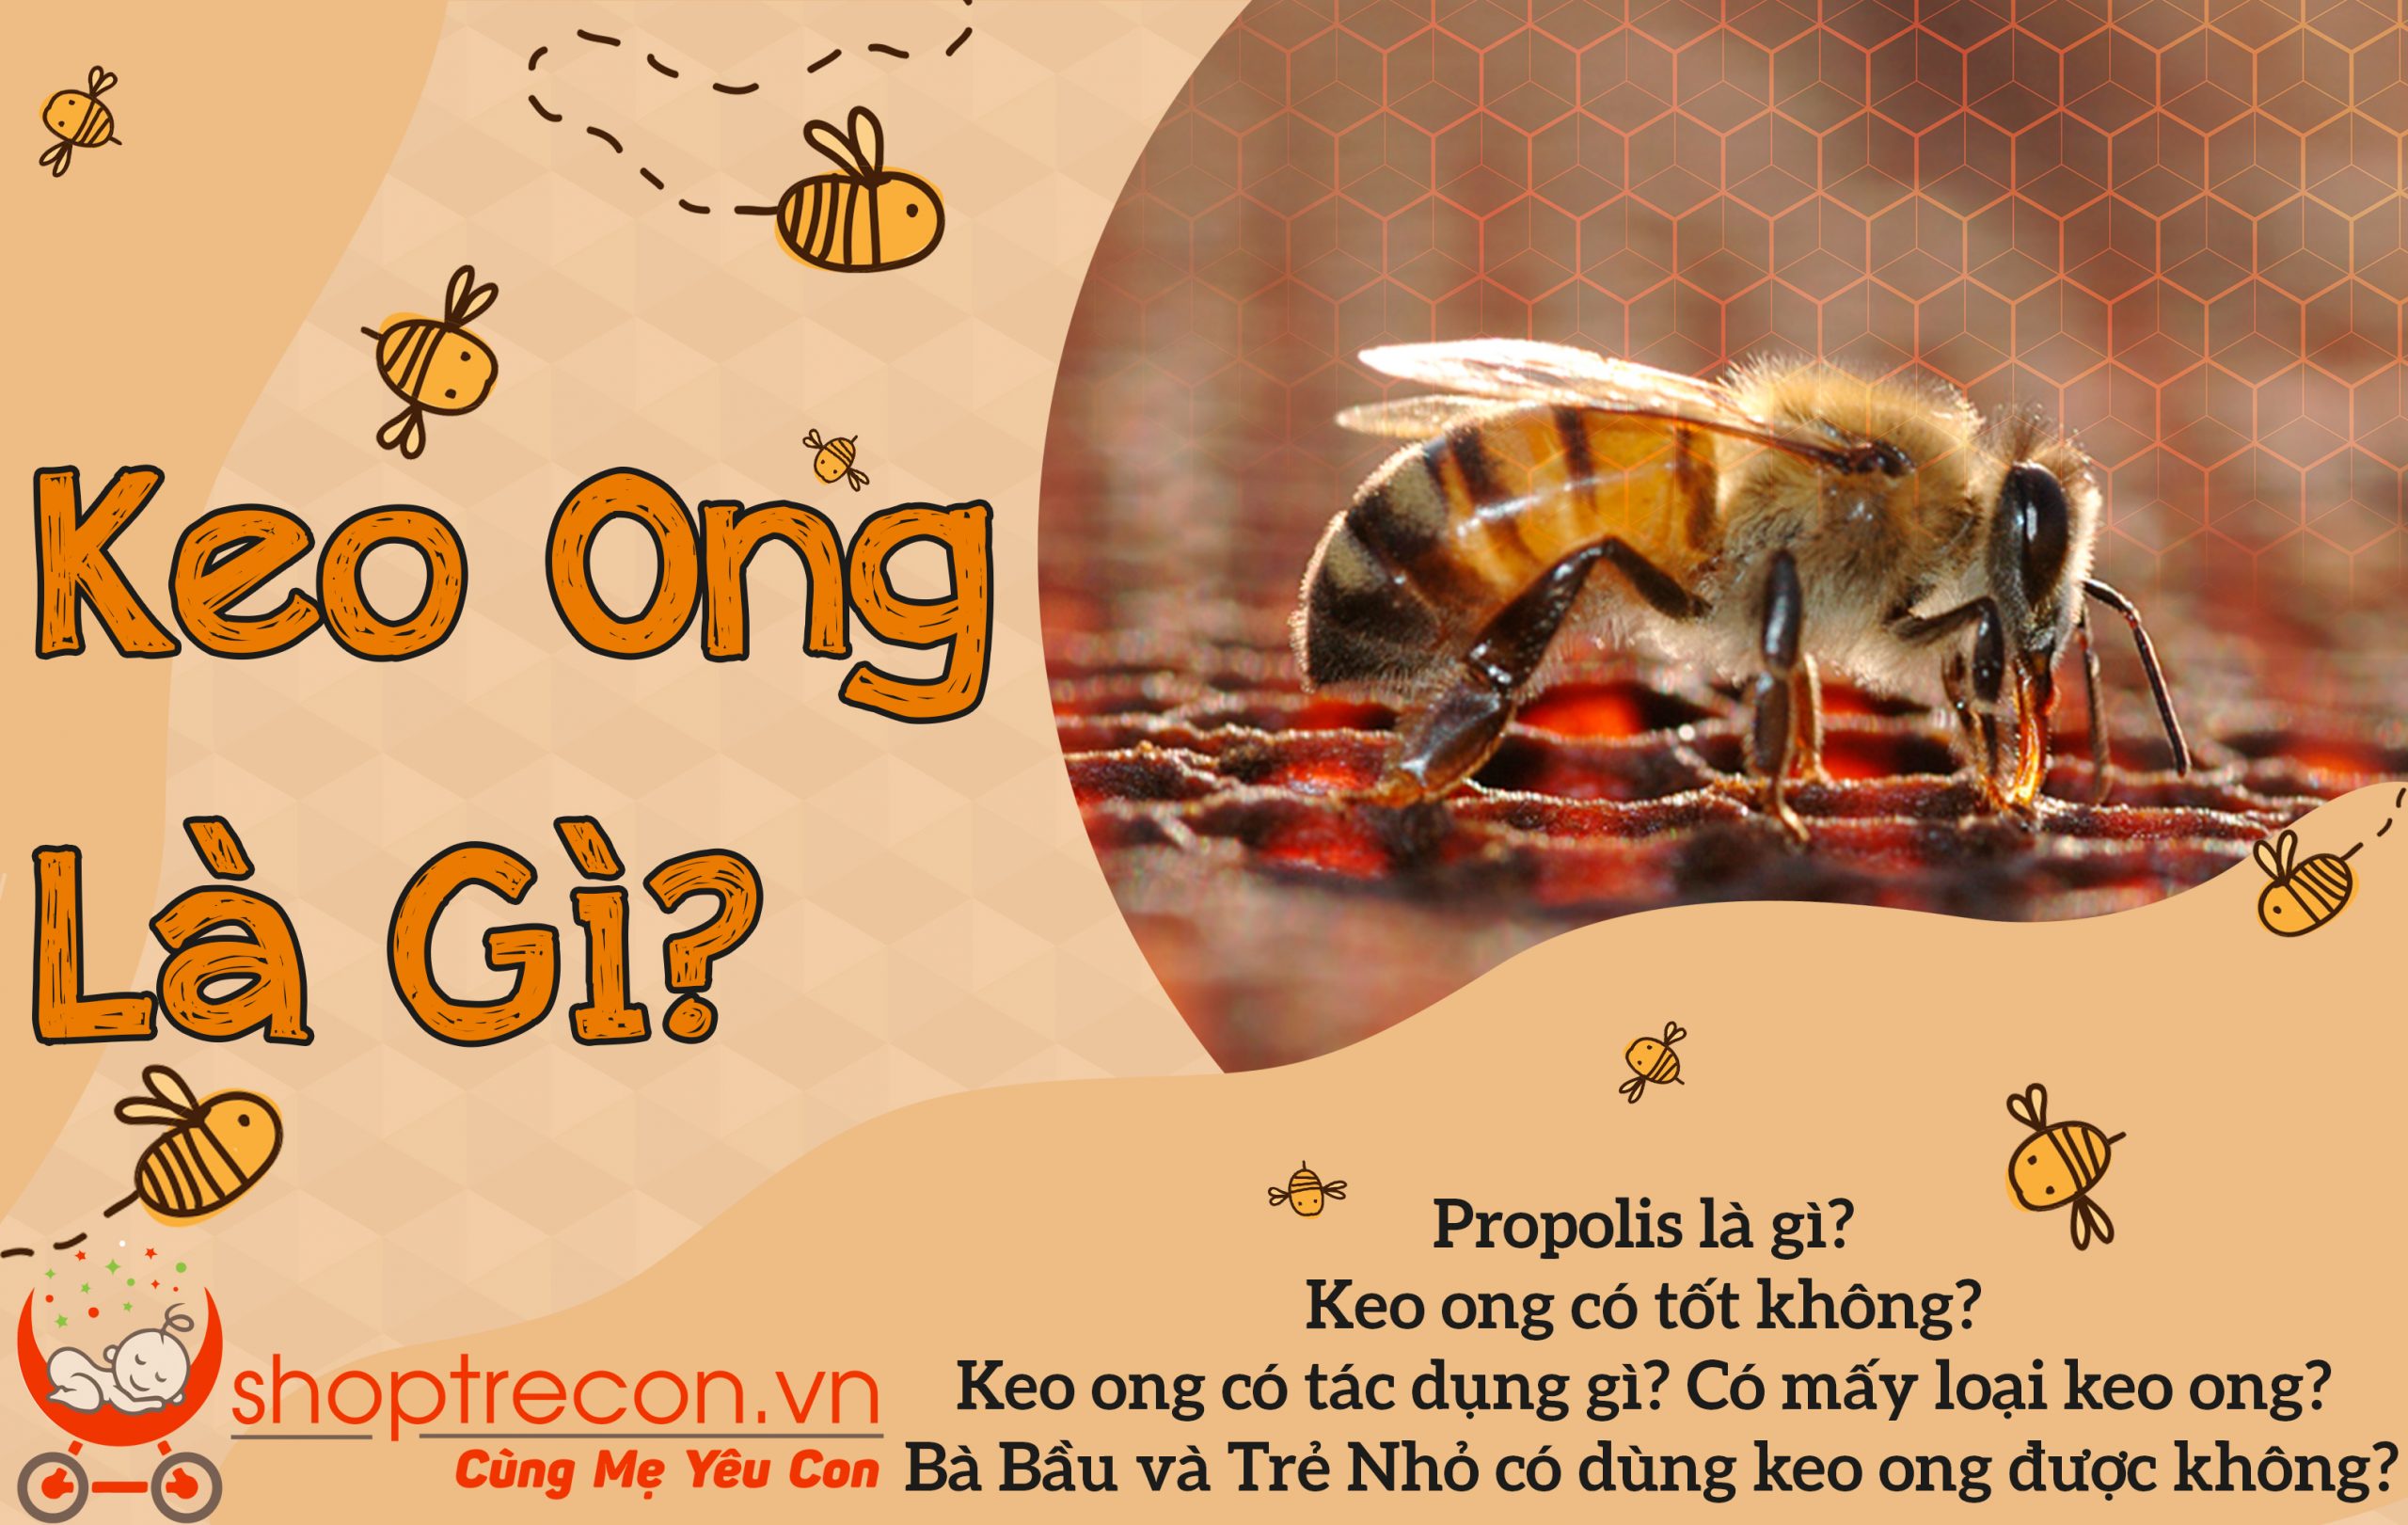 Vậy Keo Ong (Propolis) Là Gì? Keo Ong Có Tốt Không? Keo Ong Có Tác Dụng Gì? Có Mấy Loại Keo Ong? Bà Bầu Và Trẻ Nhỏ Có Dùng Keo Ong Được Không?